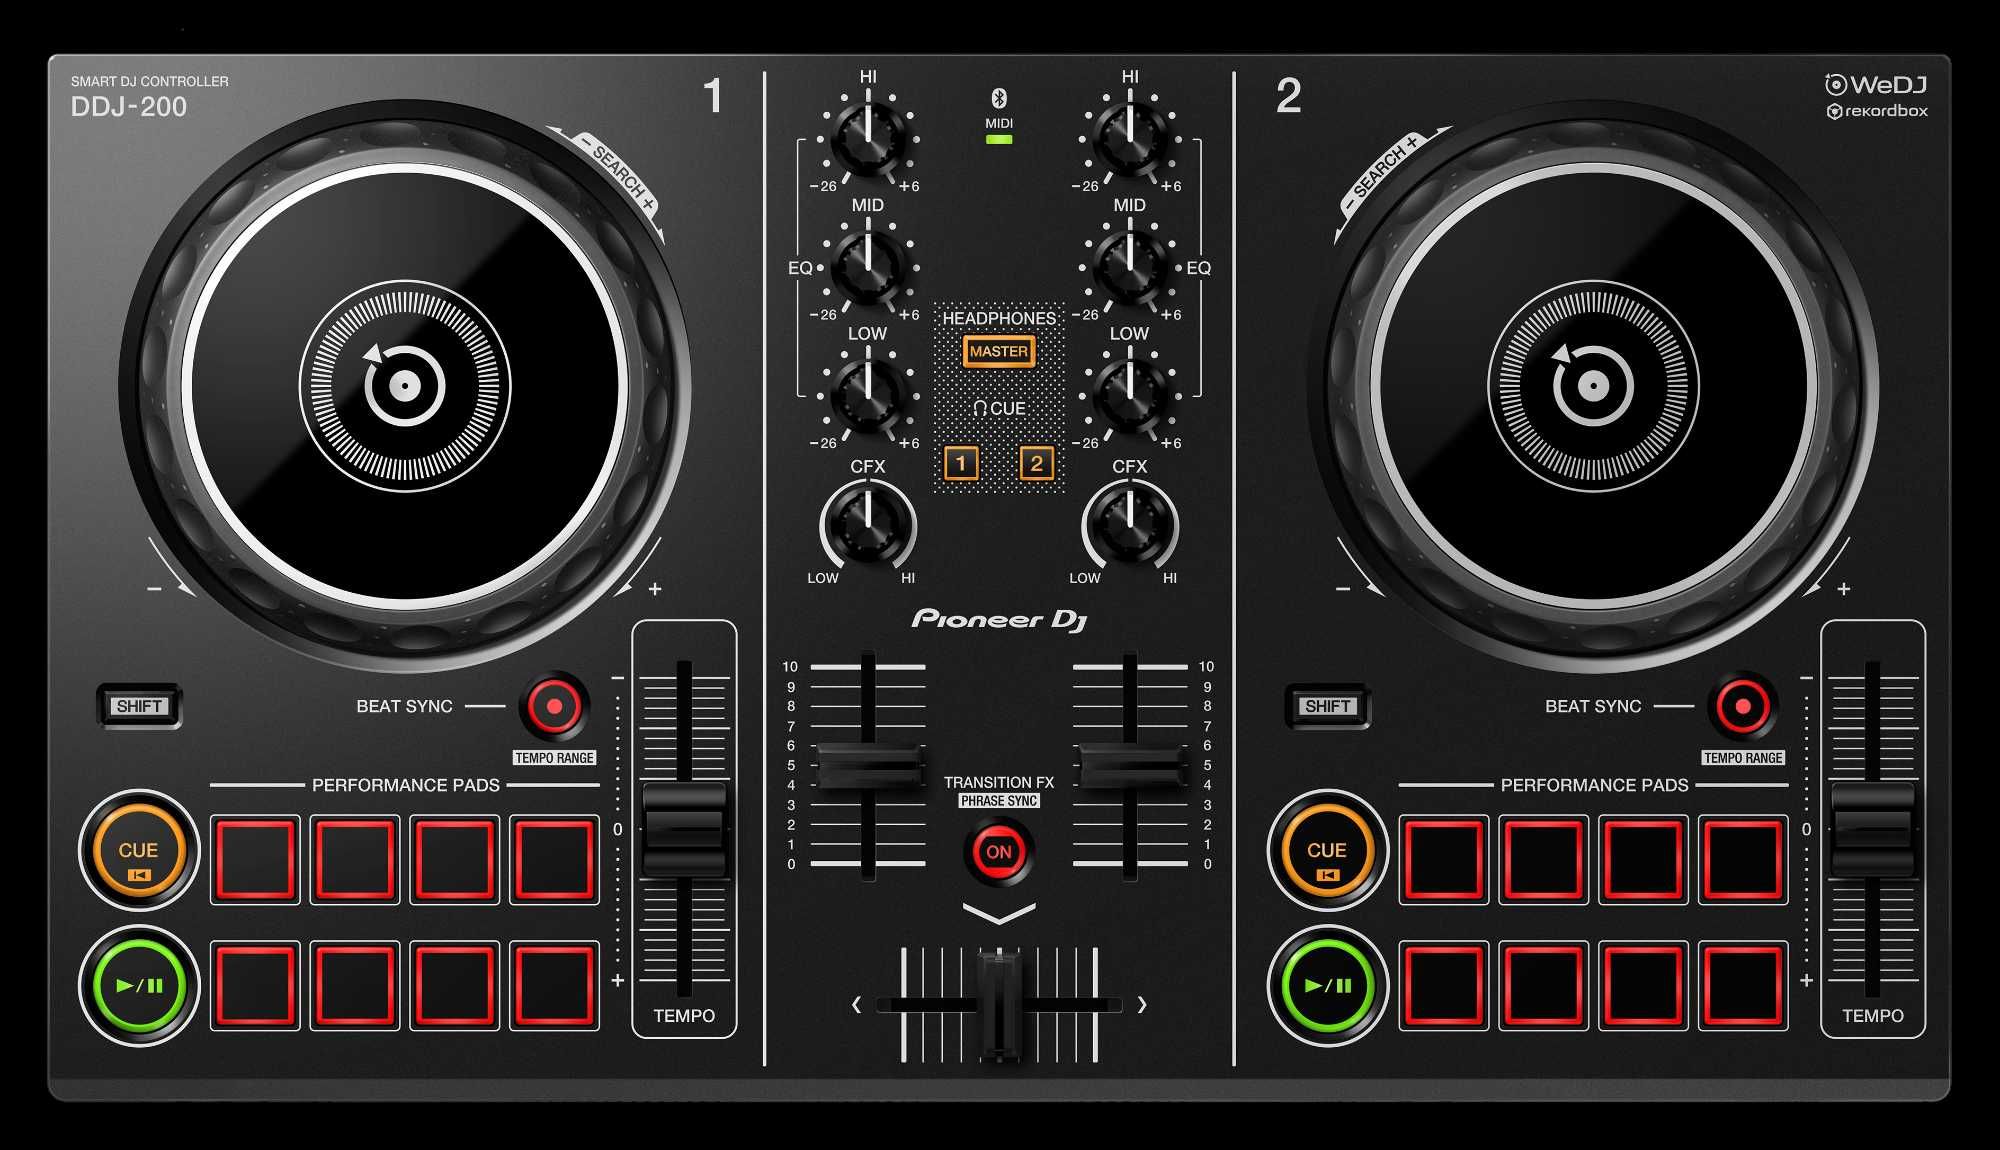 Pioneer DJ DDJ-200 2-kanałowy kontroler DJ nowy gwarancja